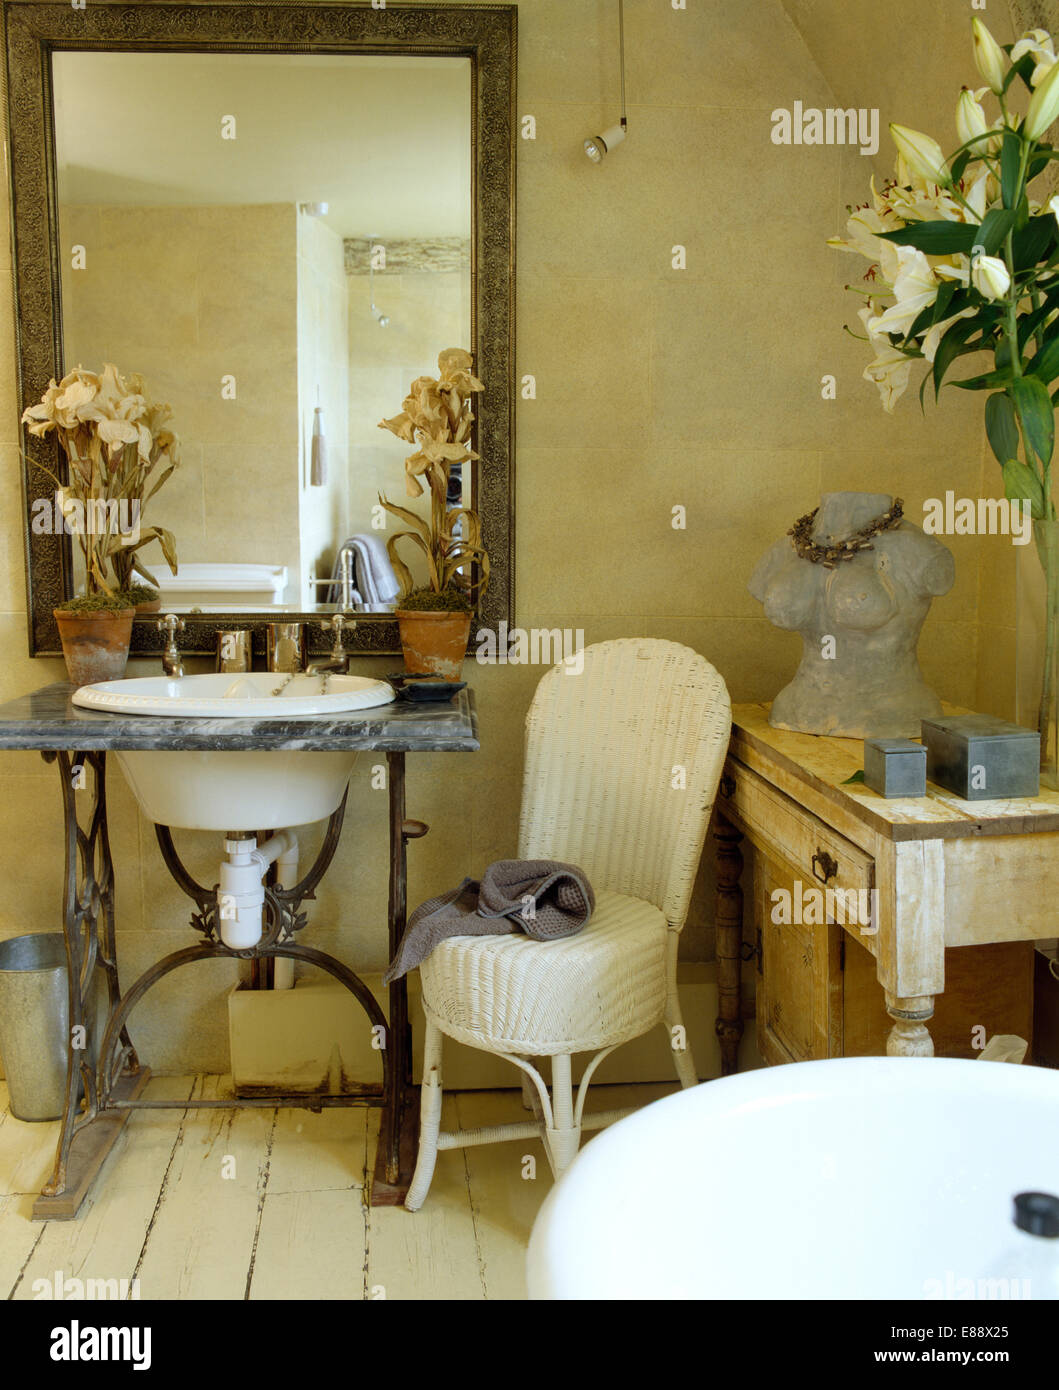 Grand miroir au-dessus du lavabo équipé en vintage table de la machine à coudre dans la salle de bain pays avec chaise en rotin blanc Banque D'Images